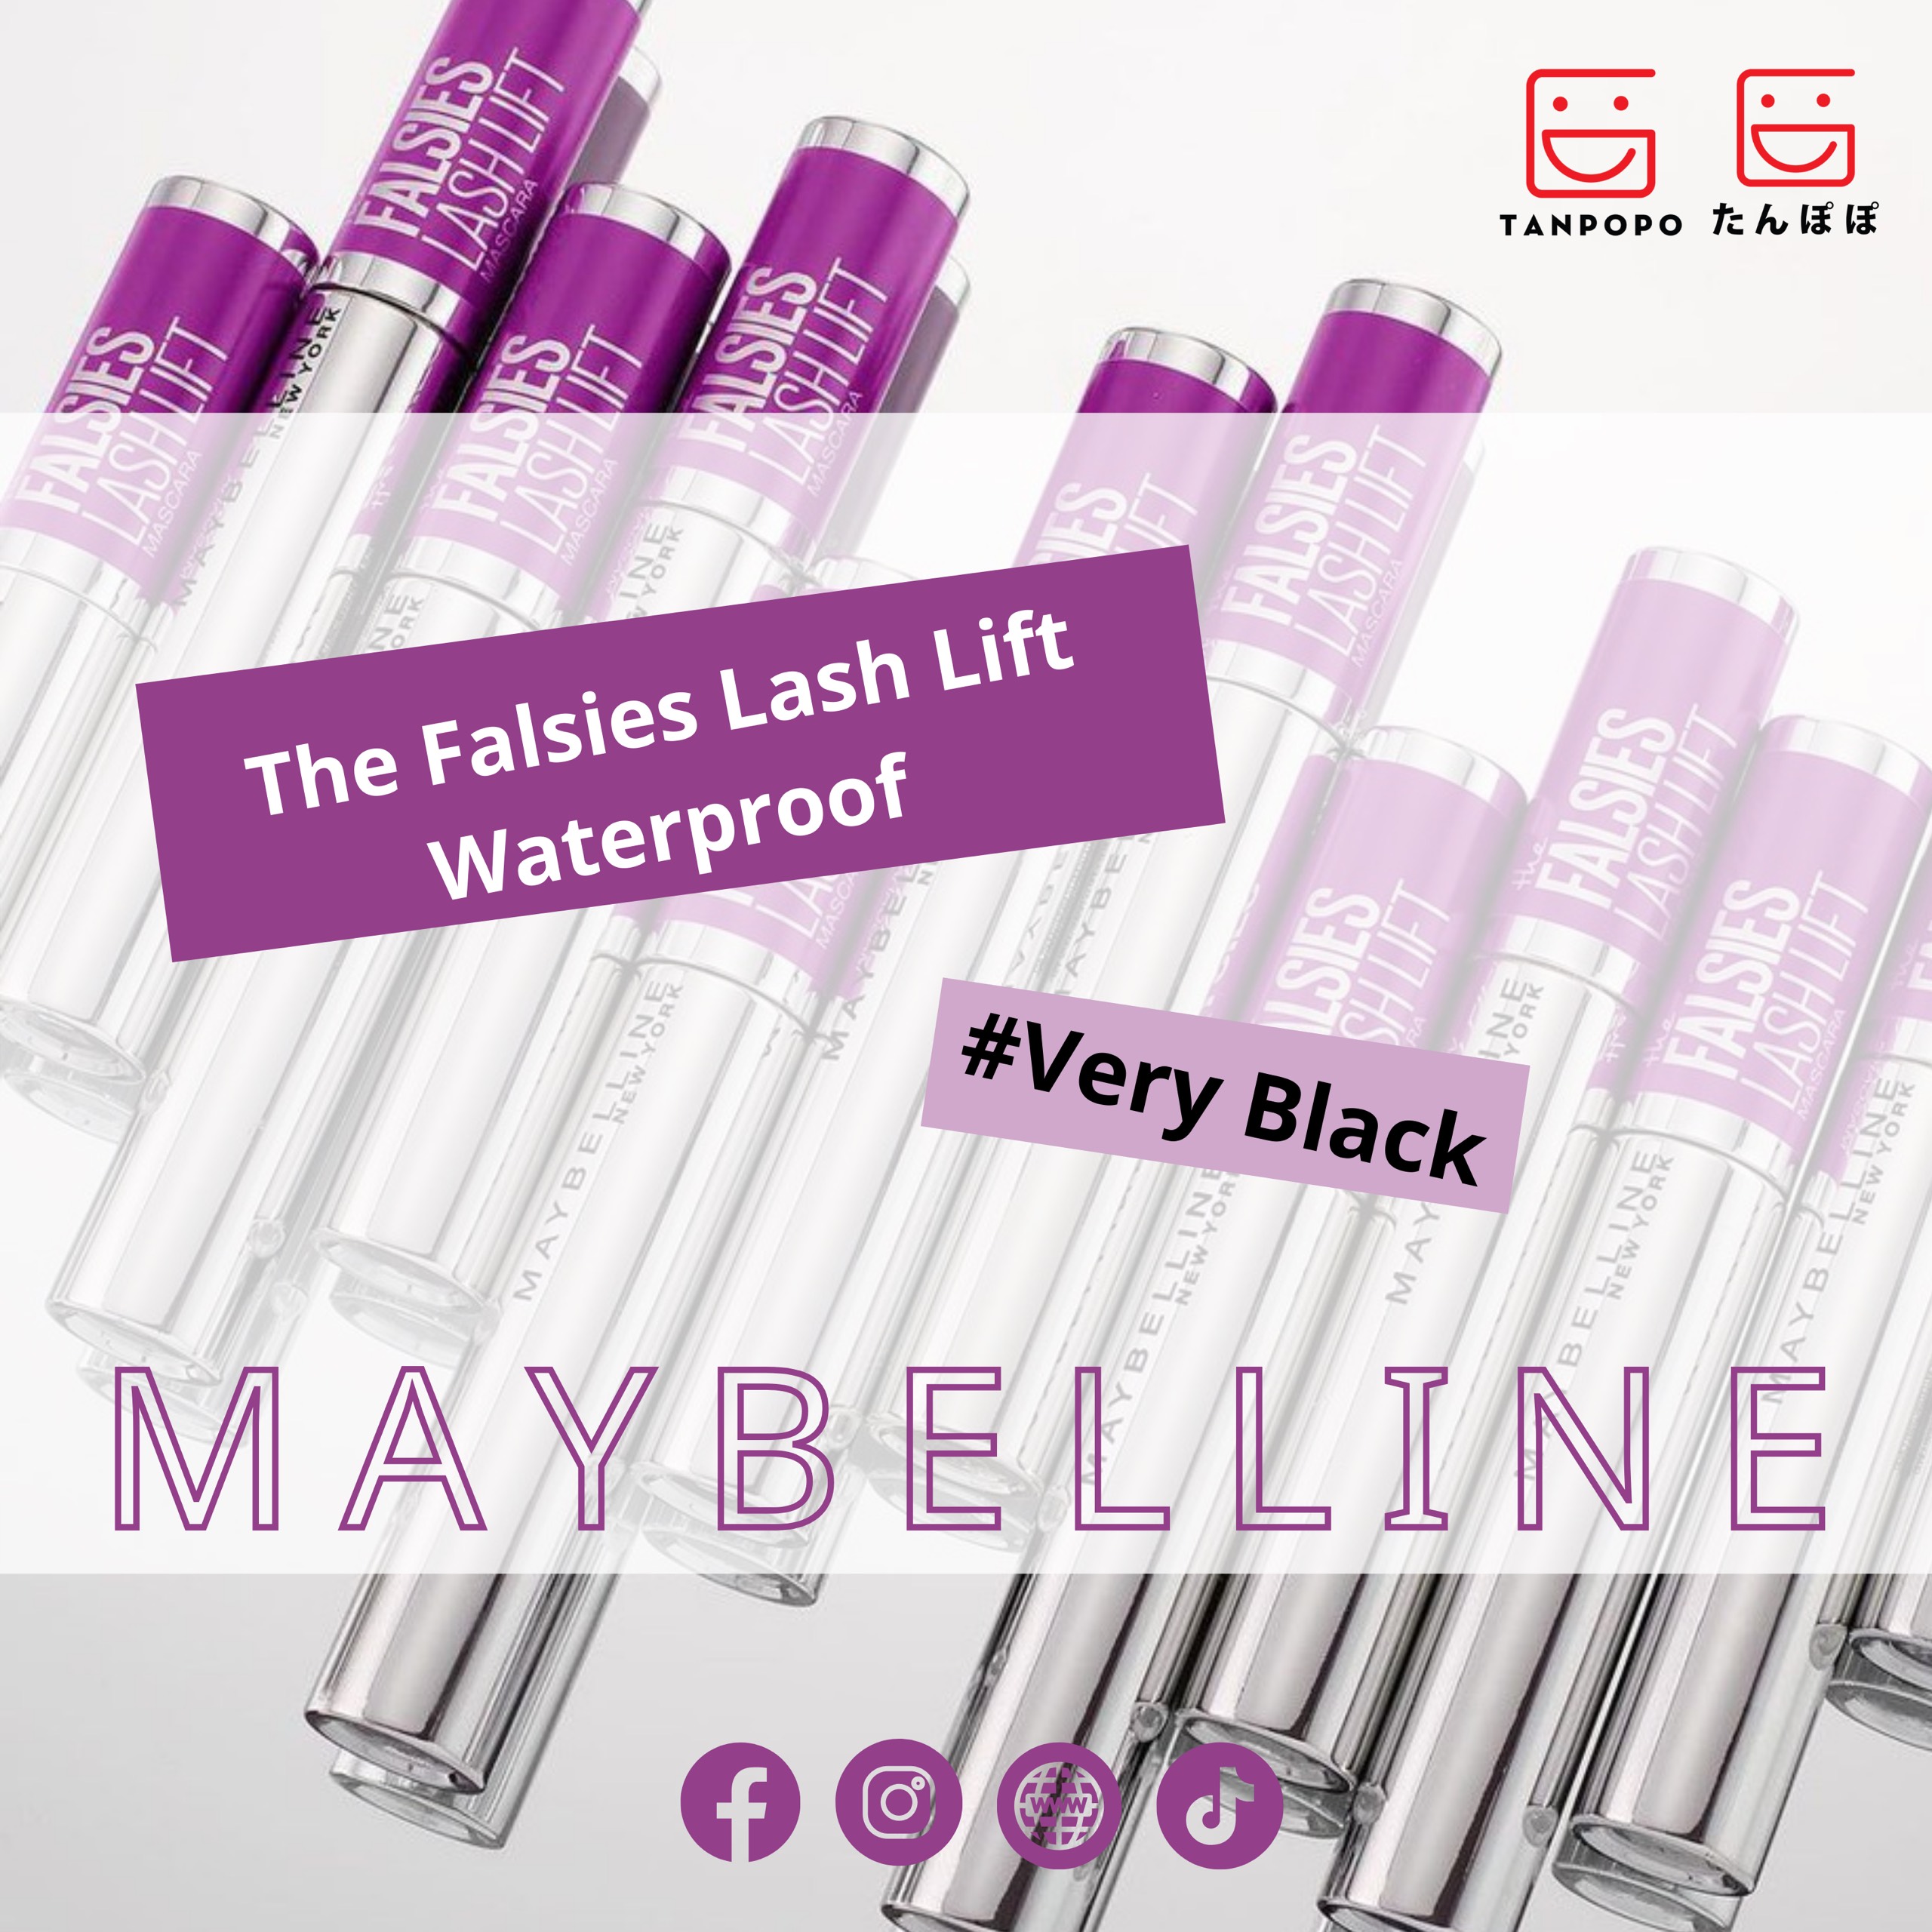 Mascara Maybelline Falsies Lash Lift Waterproof - Very Black